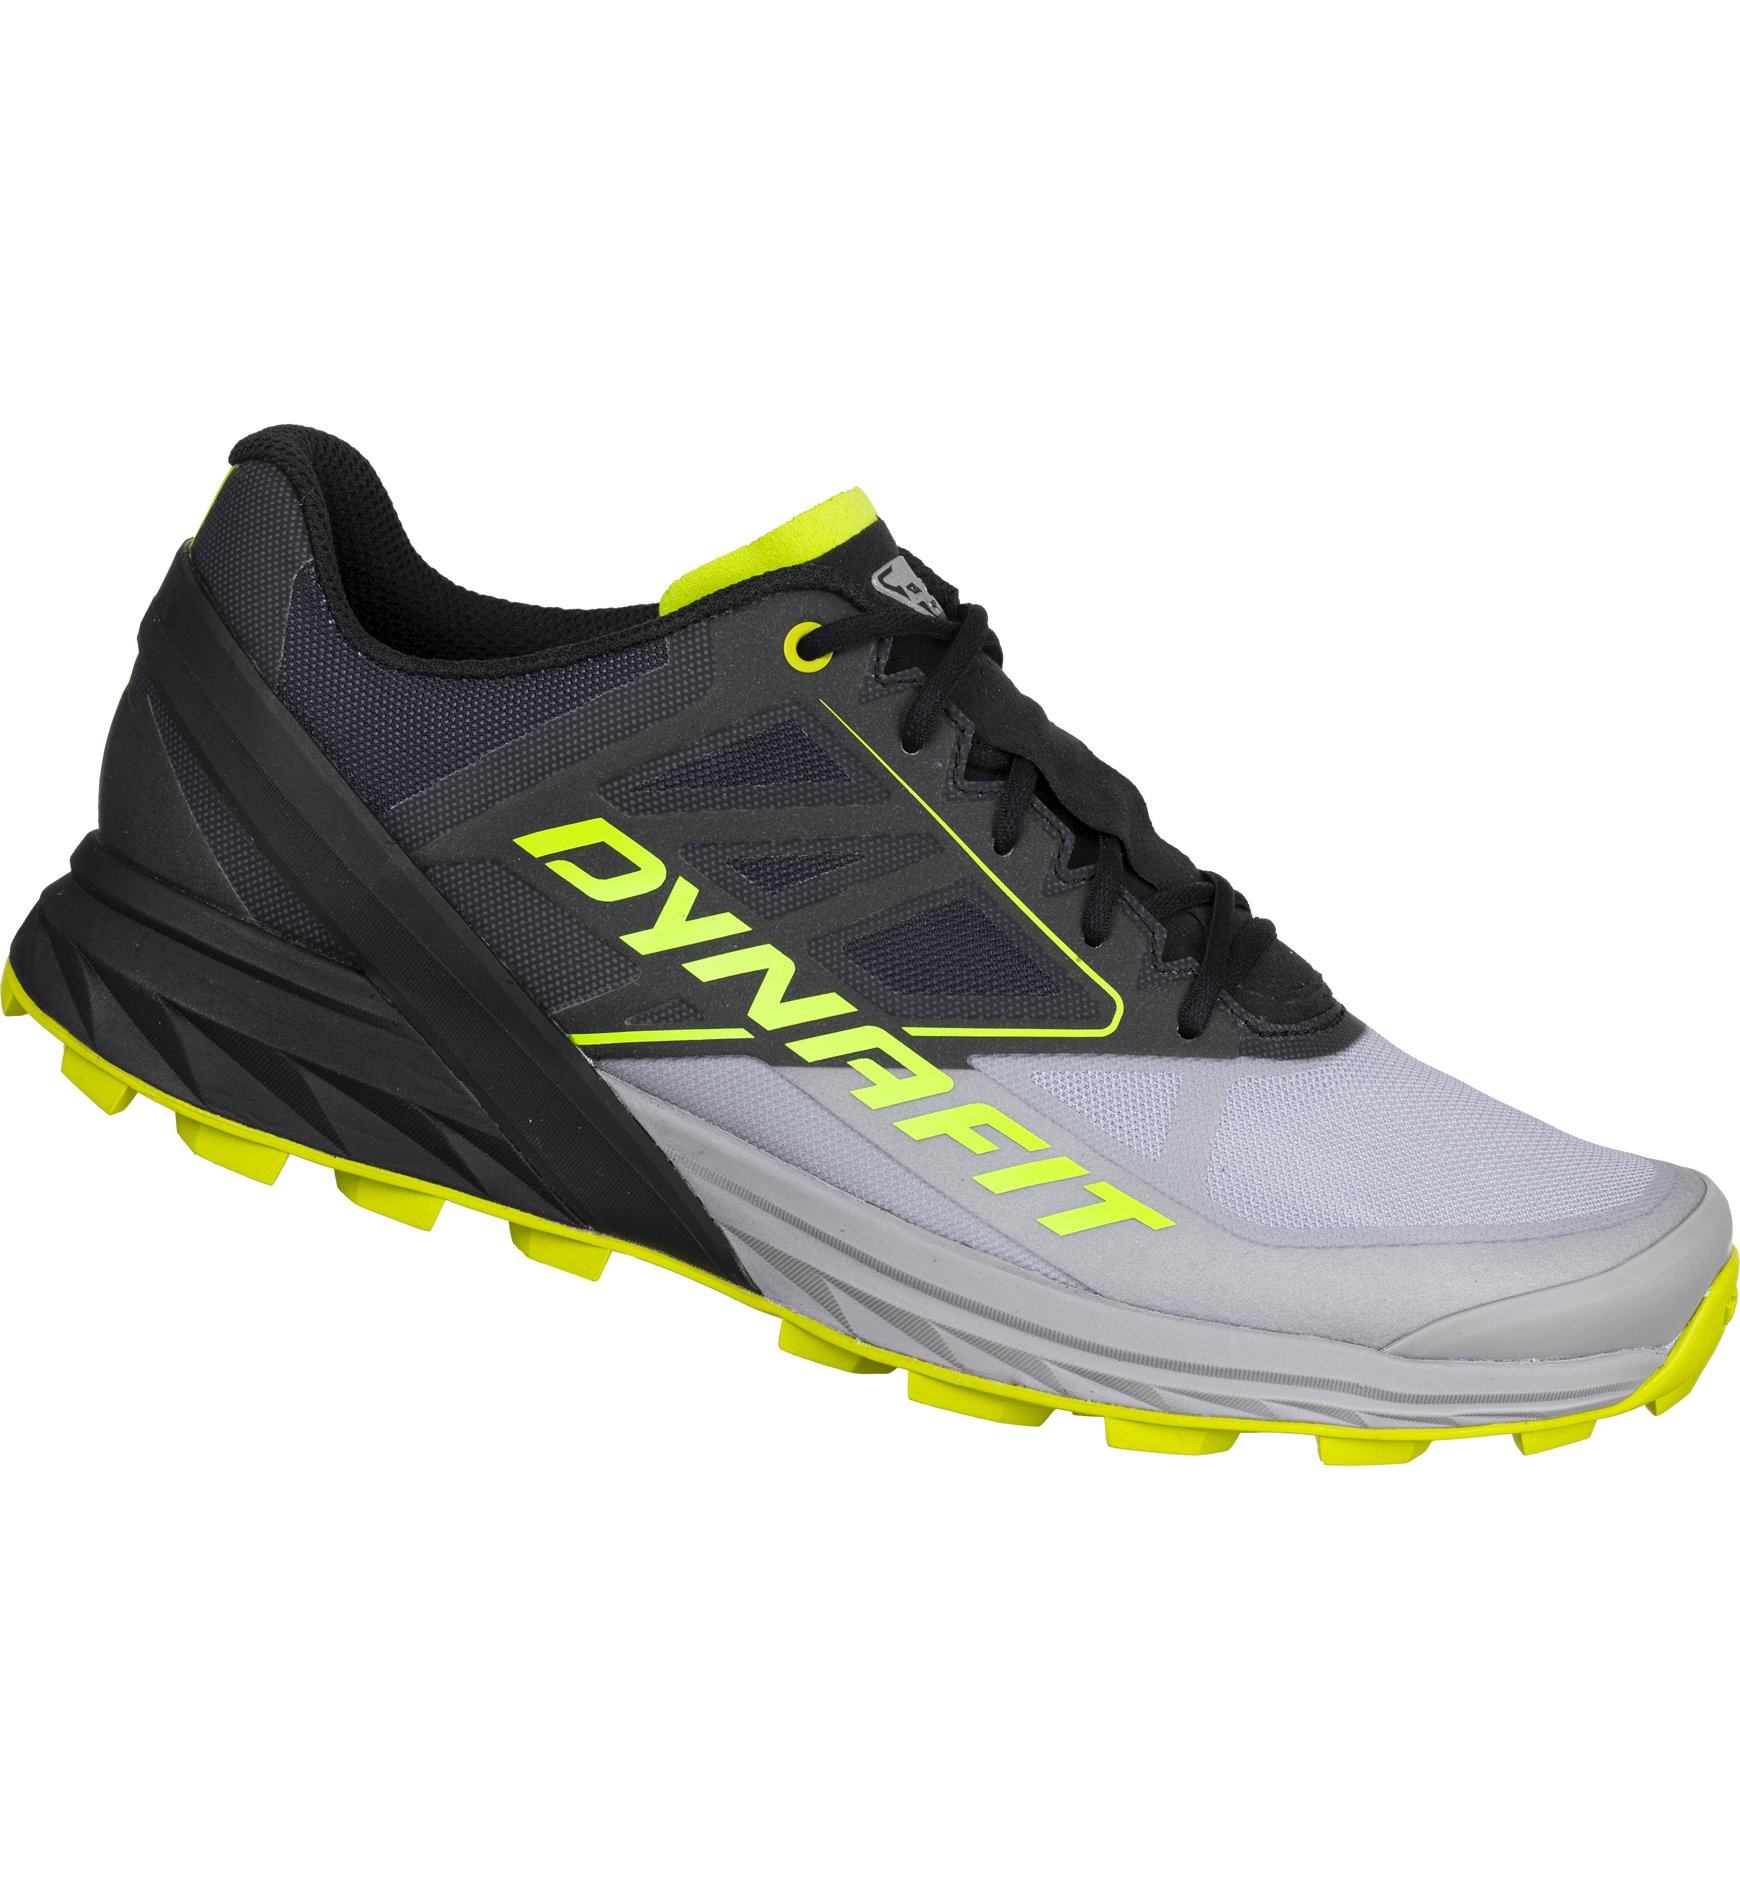 Dynafit Alpine scarpe trail running uomo